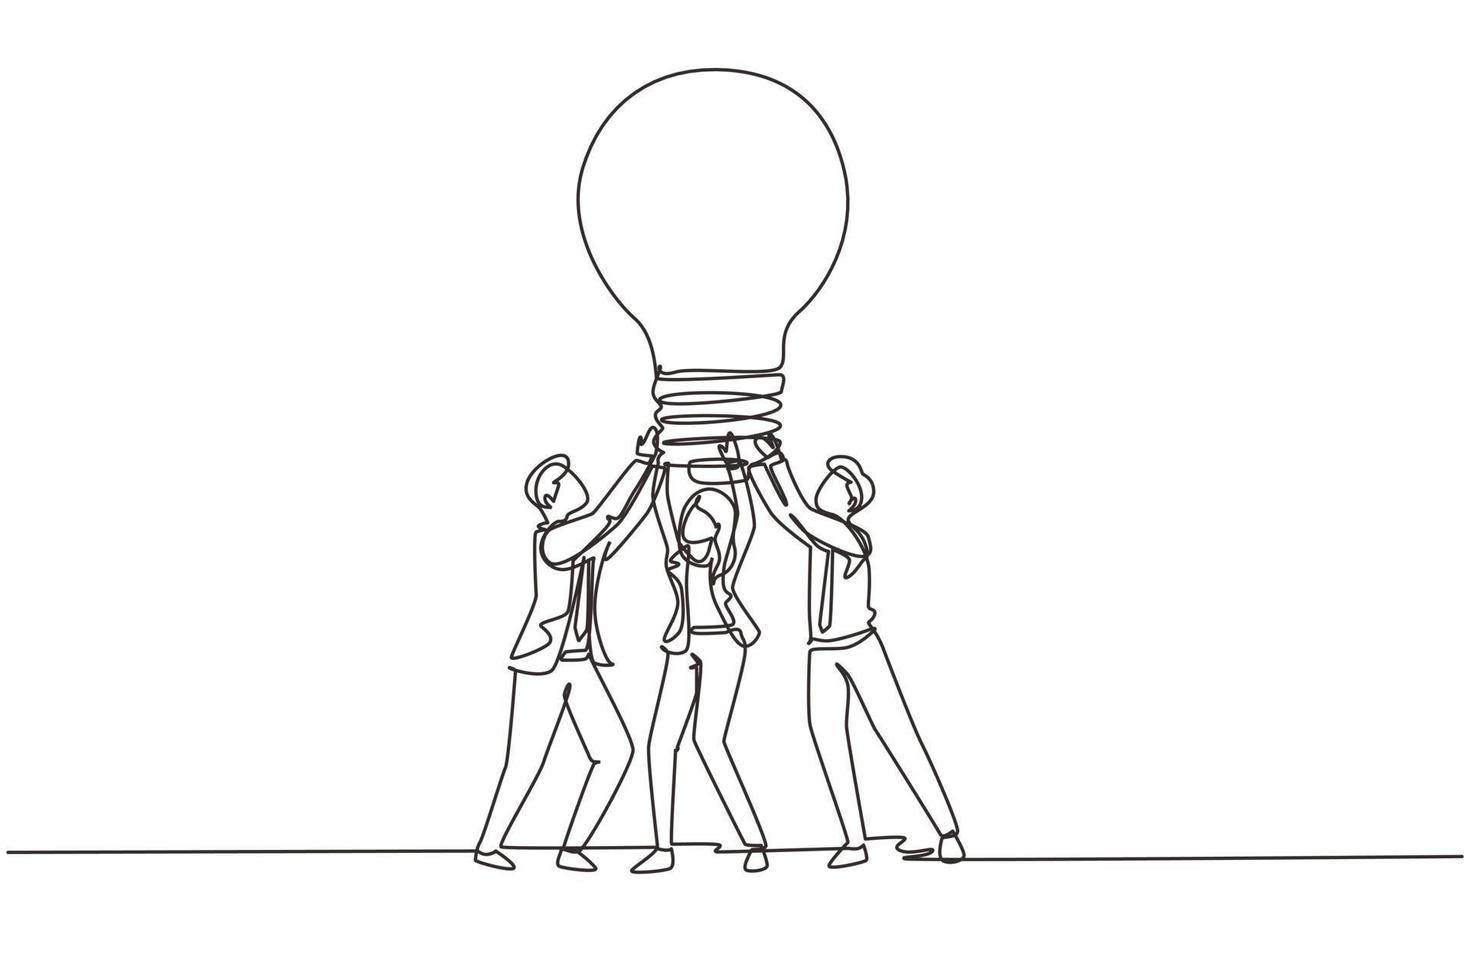 einzelne einstrichzeichnungsgruppenleute halten riesige lampe neue idee. Erfolg im Geschäft hängt von Teamarbeit, guter Planung und dem Finden kreativer Problemlösungen ab. ununterbrochene Linie zeichnen Design-Vektor-Illustration vektor